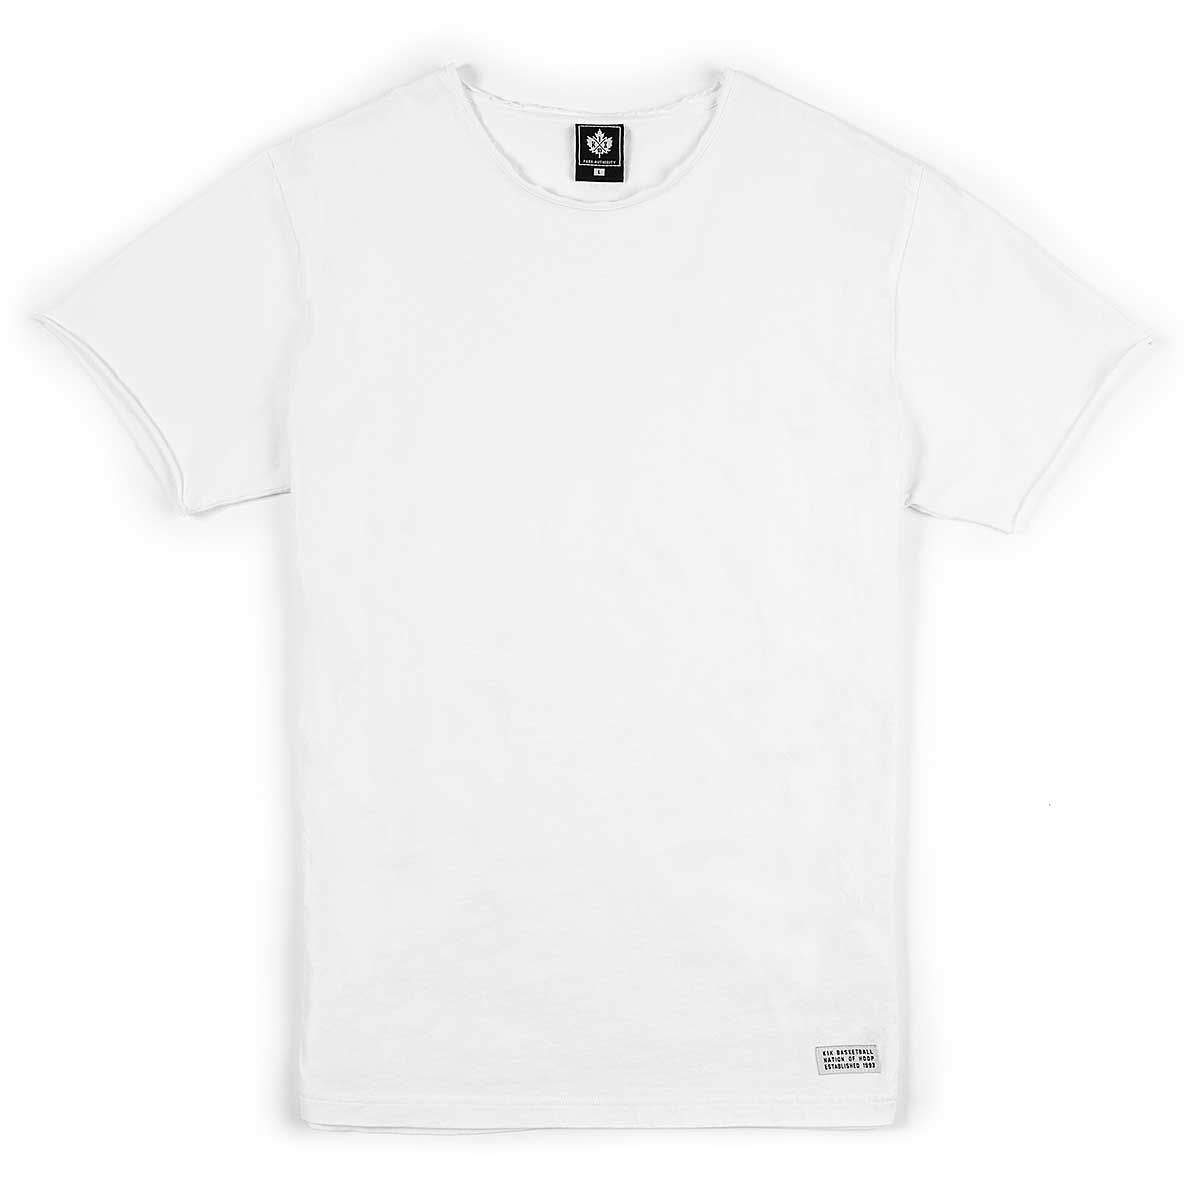 Vêtements Hommes | Washed Authentic T-Shirt - BP06729